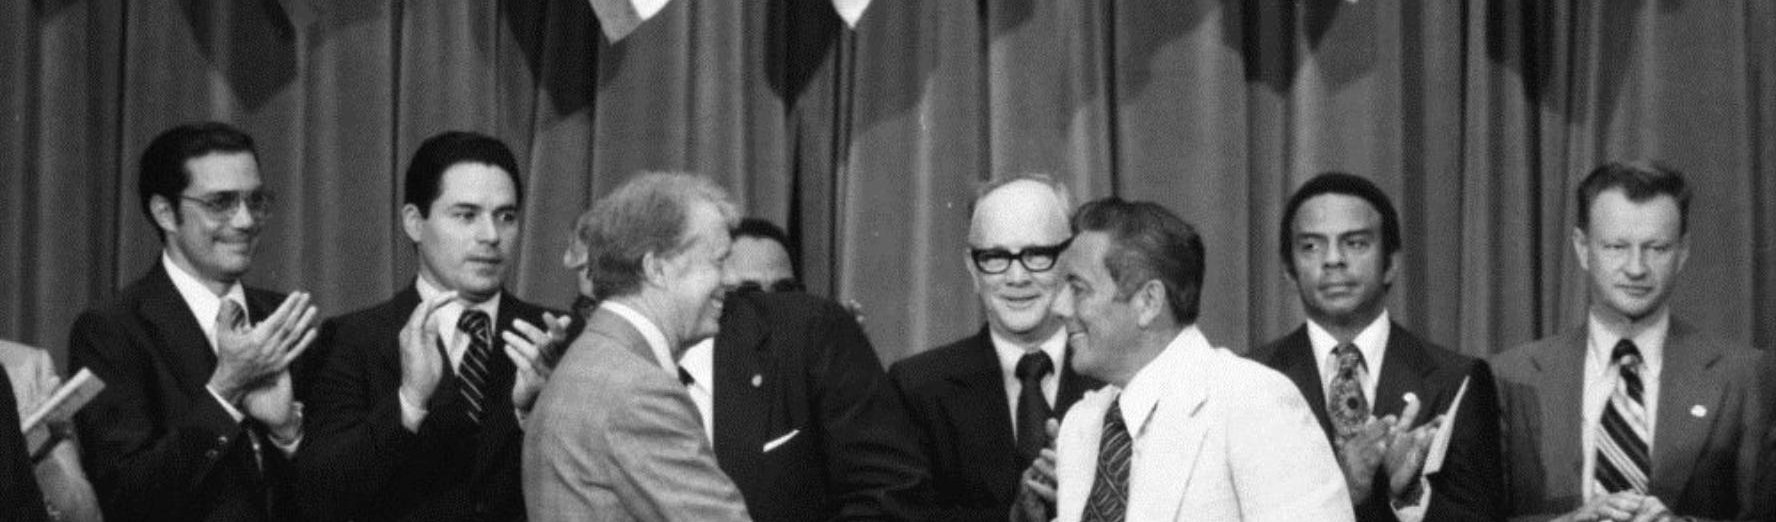 Ganhar a guerra sem perder a memória: relembre os 43 anos do Tratado Torrijos-Carter